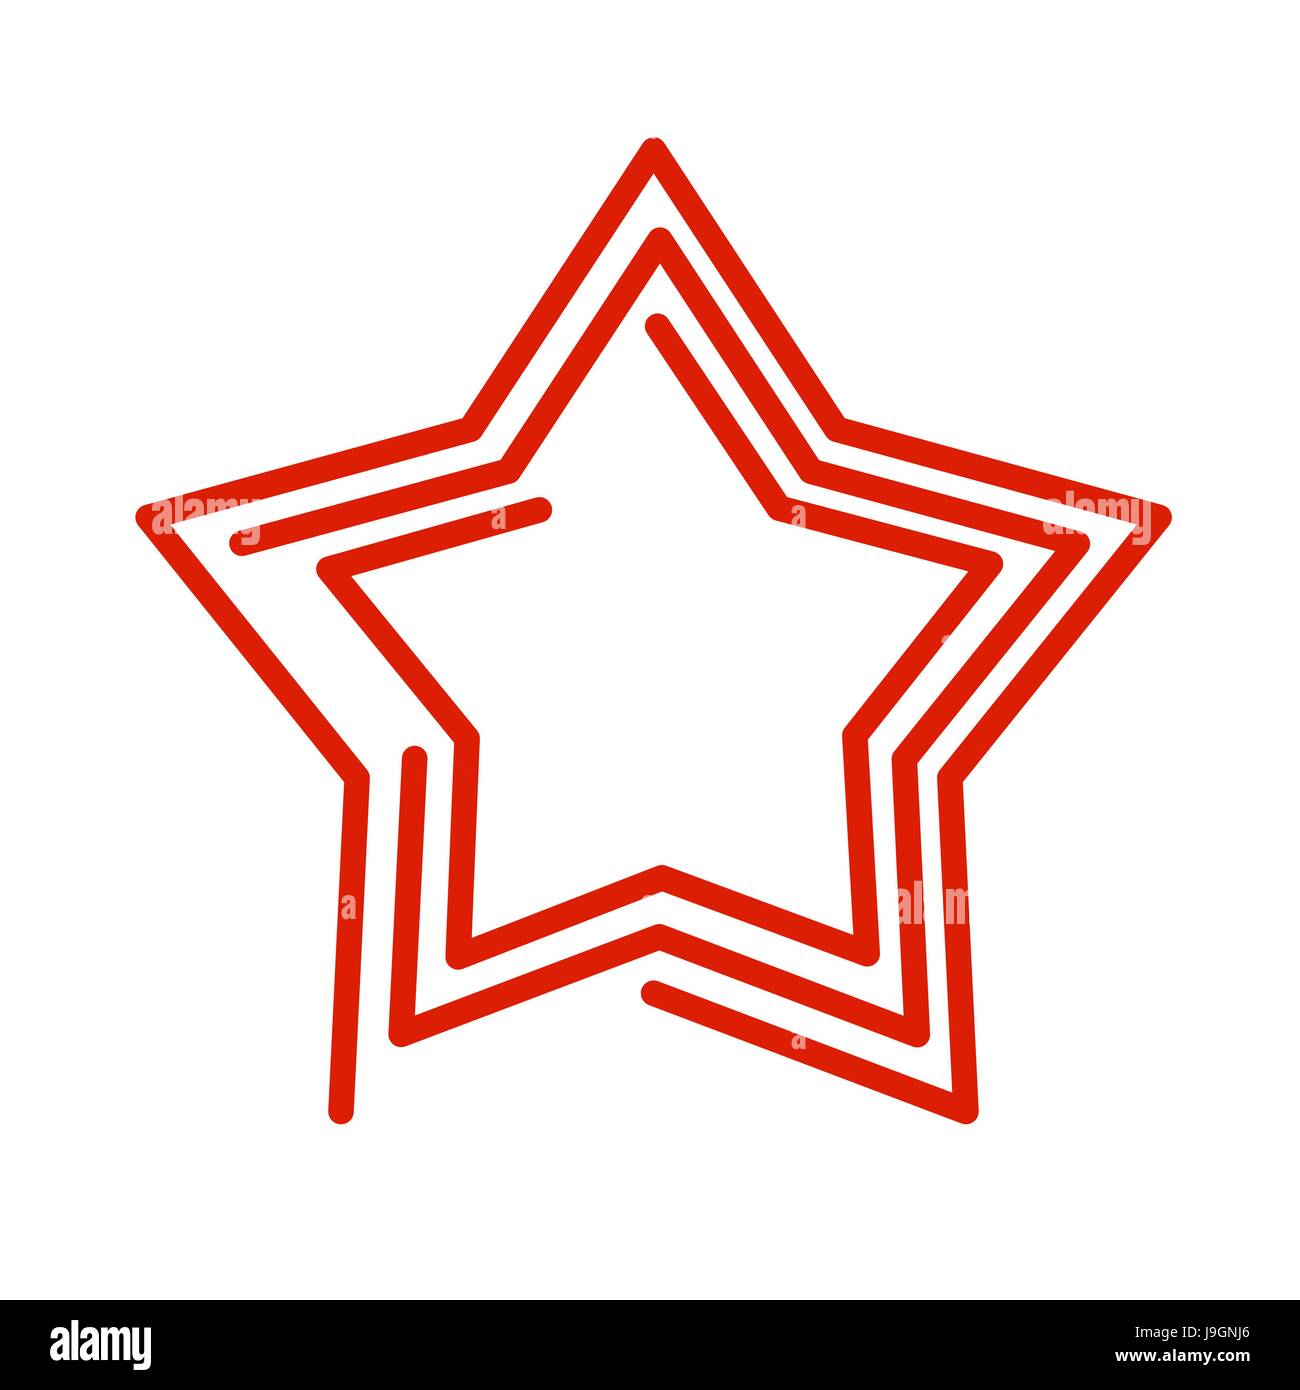 Star style de ligne. Signe abstrait rouge sur fond blanc Illustration de Vecteur